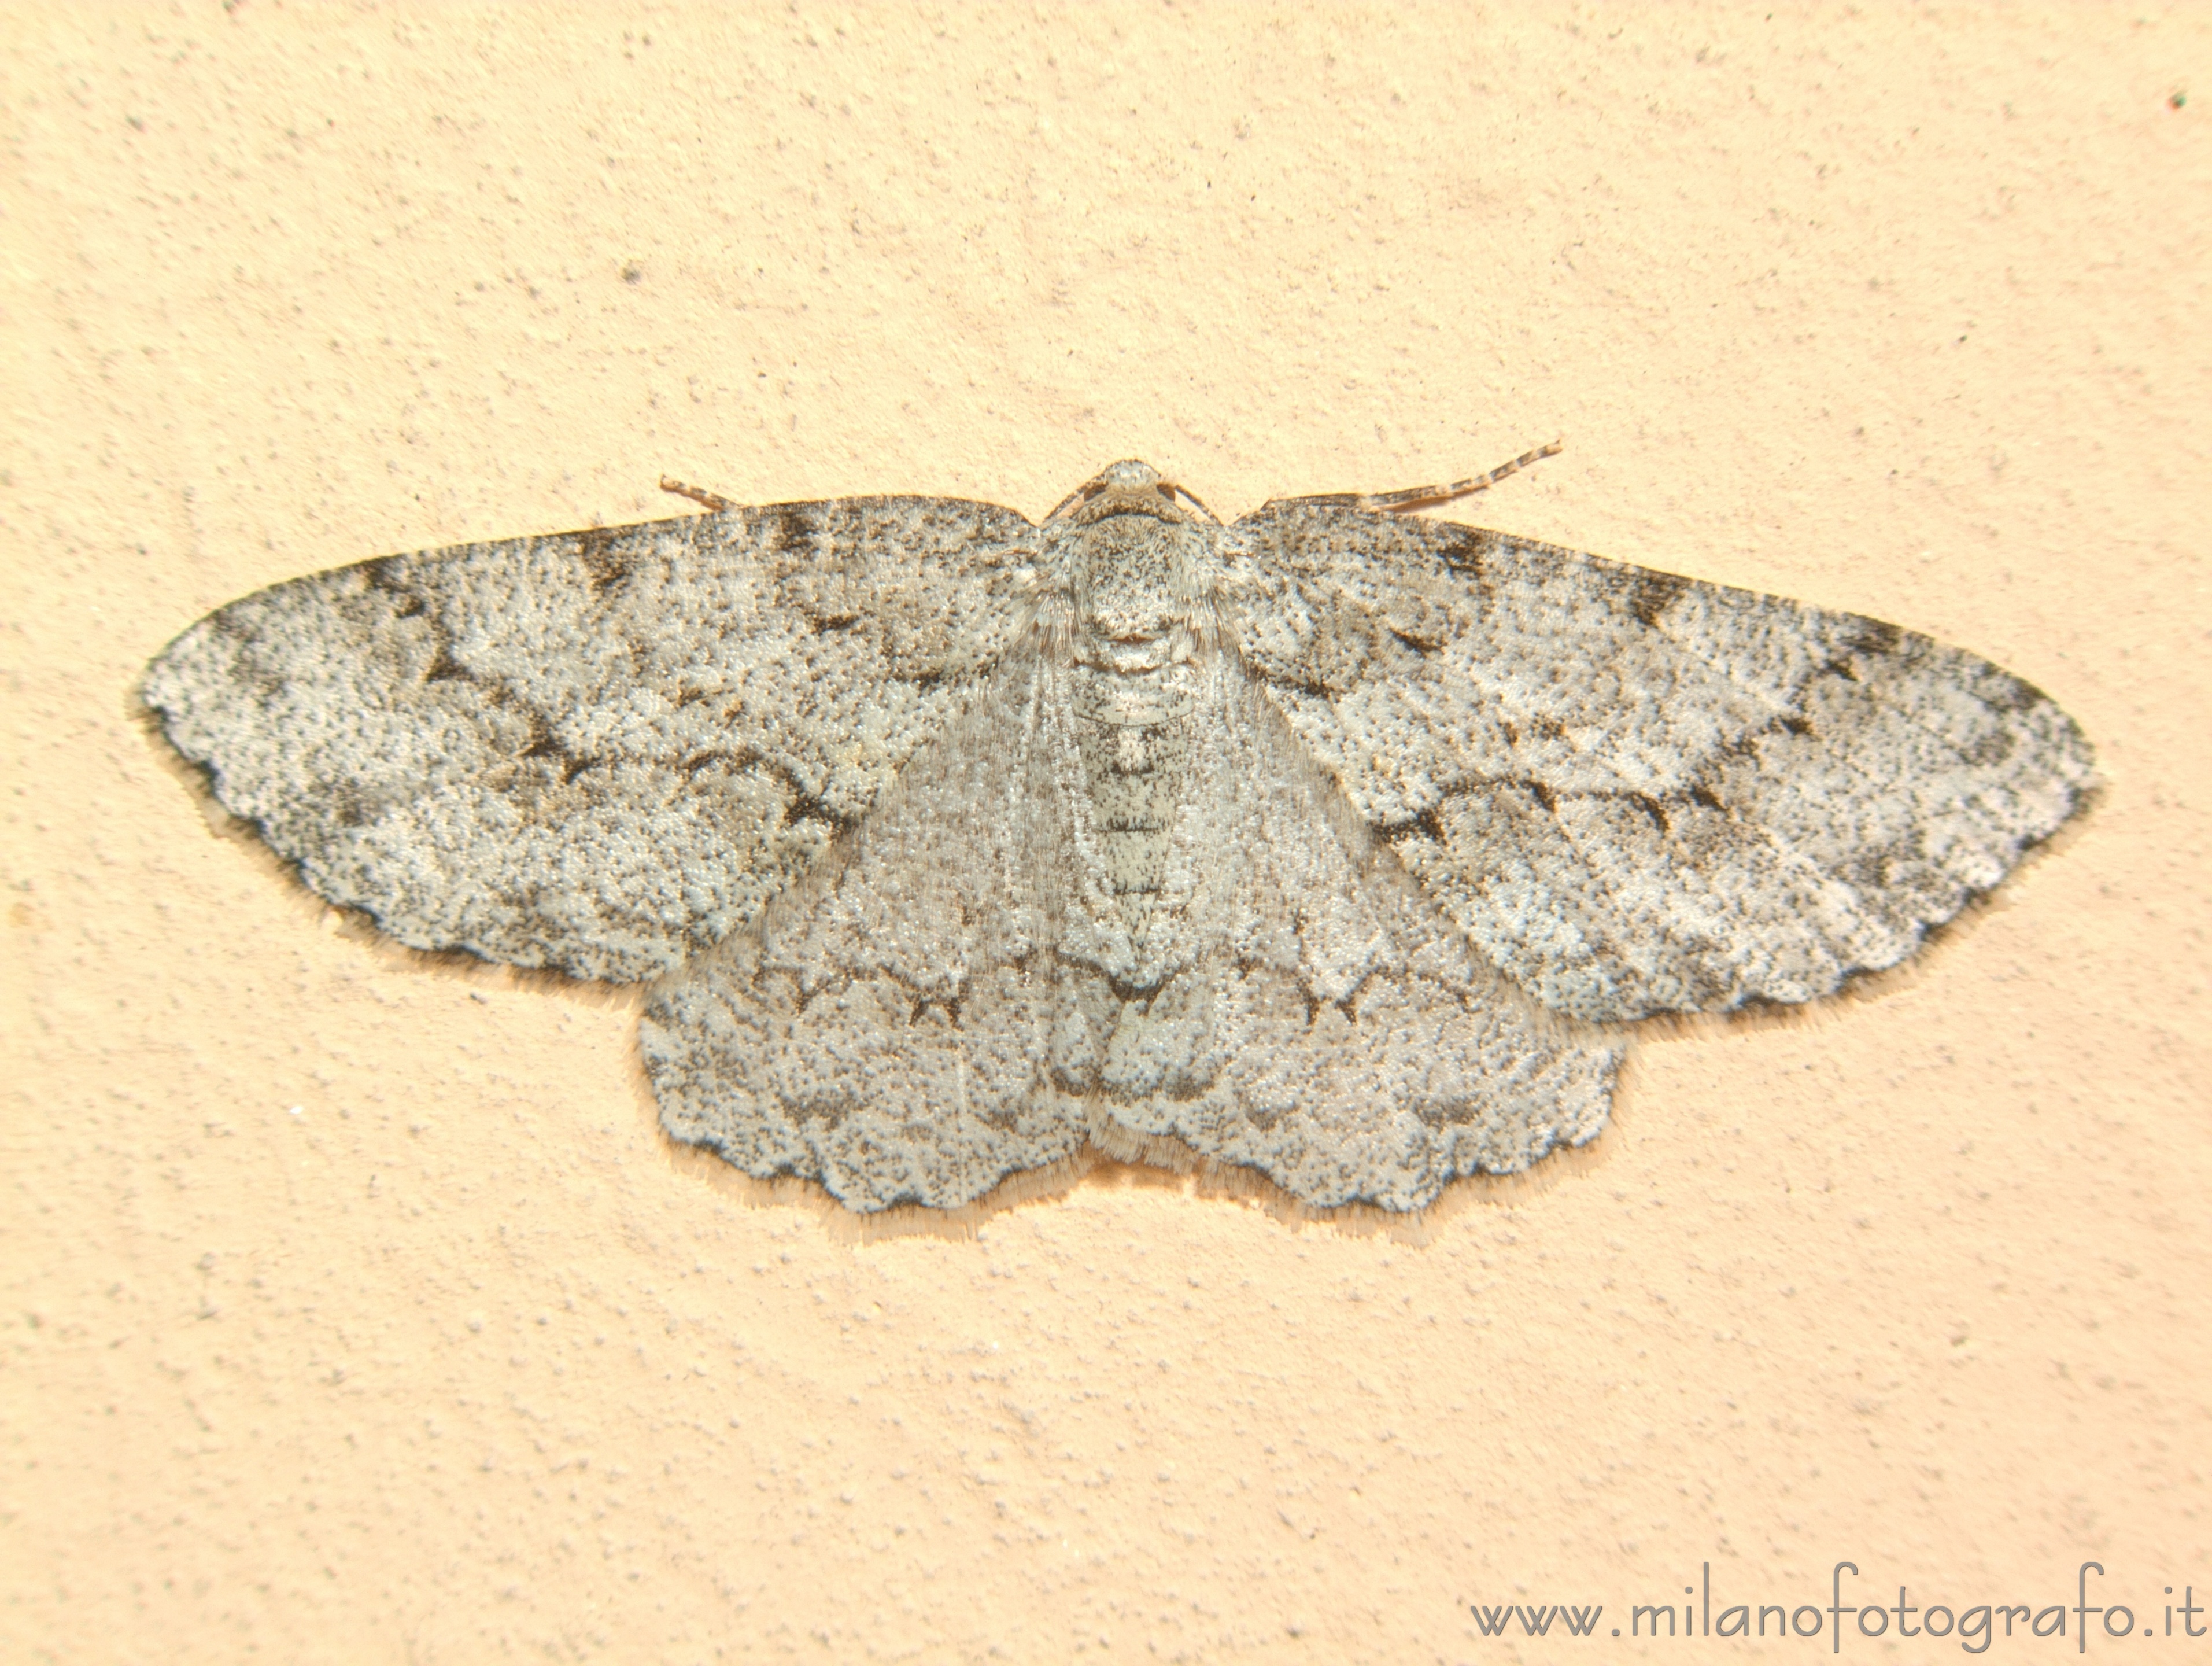 Campiglia Cervo (Biella, Italy): Small moth - Campiglia Cervo (Biella, Italy)